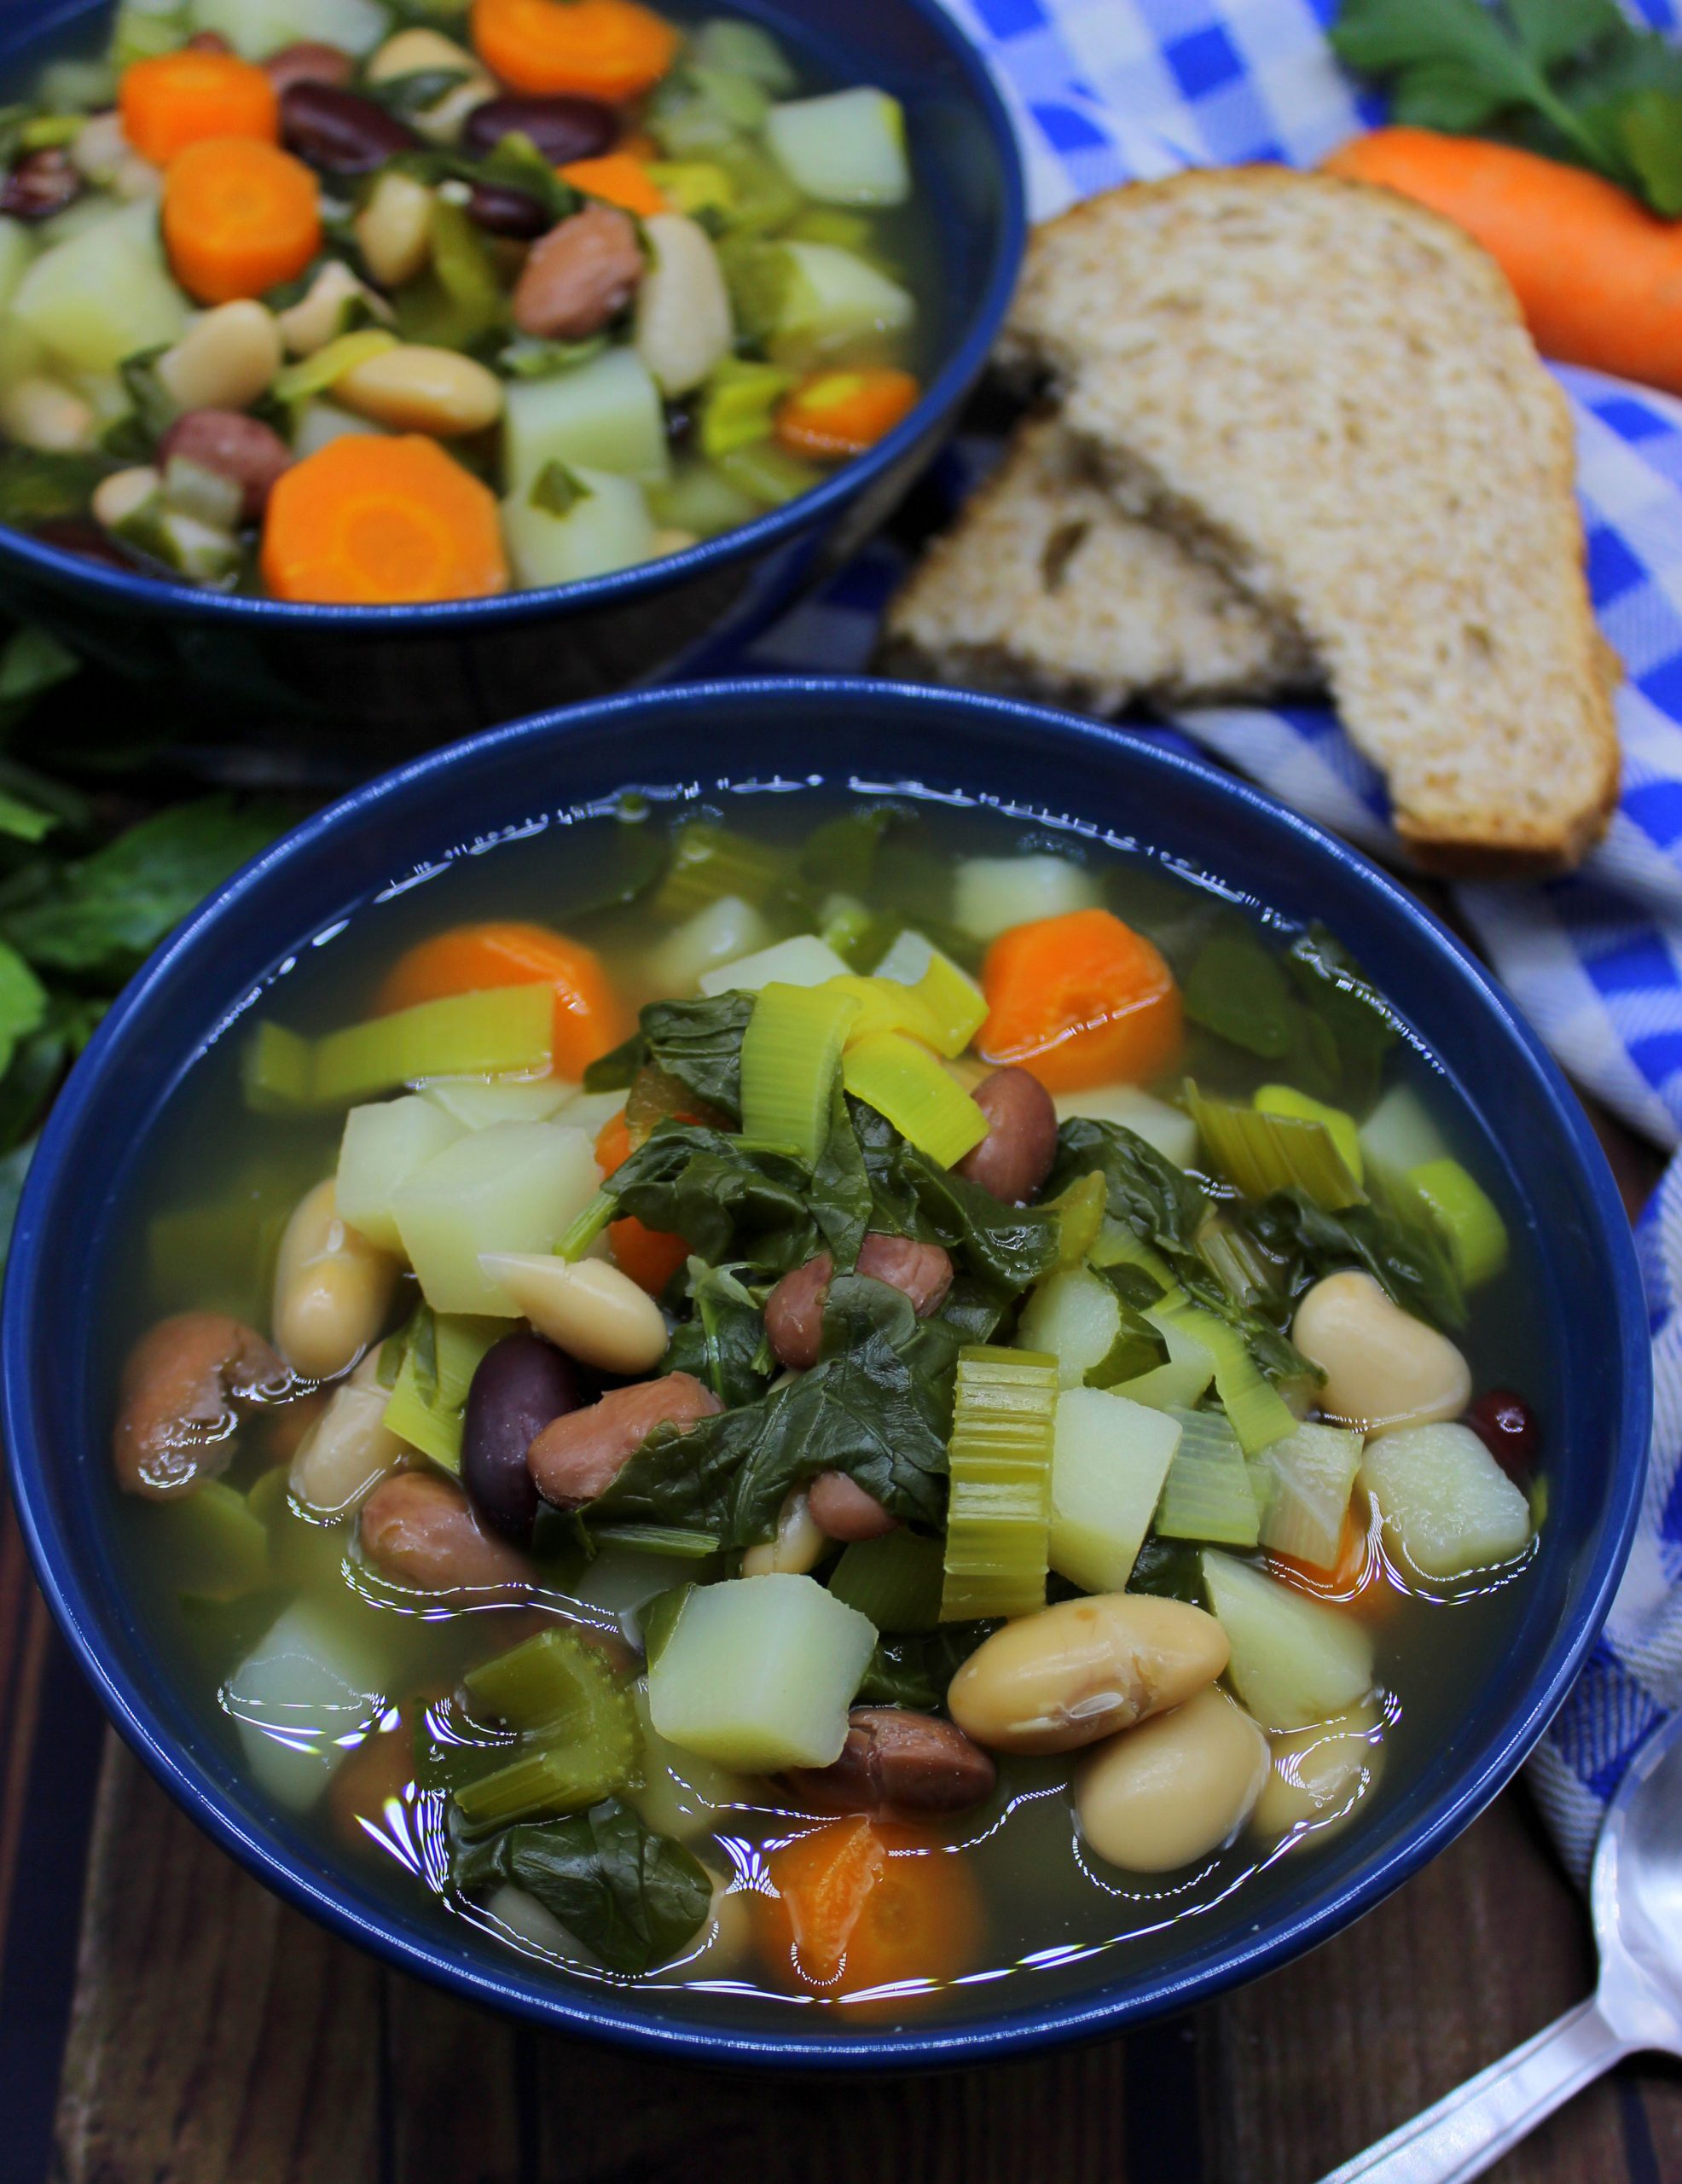 Low-fat four bean soup